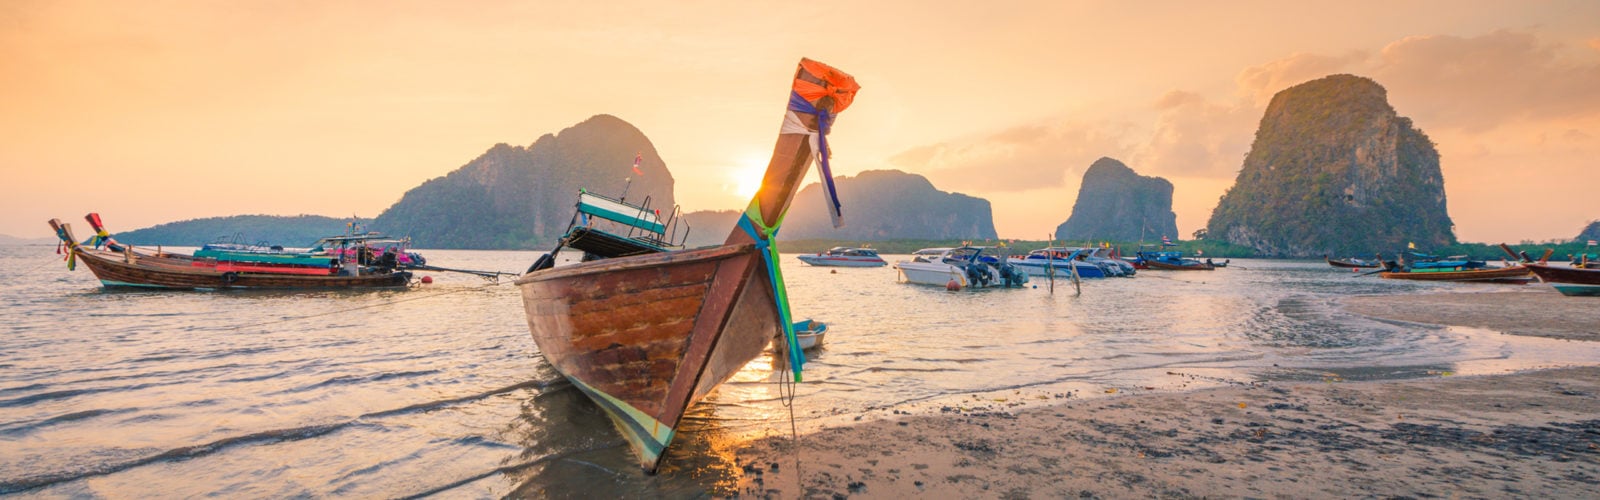 krabi-boats-sunset.